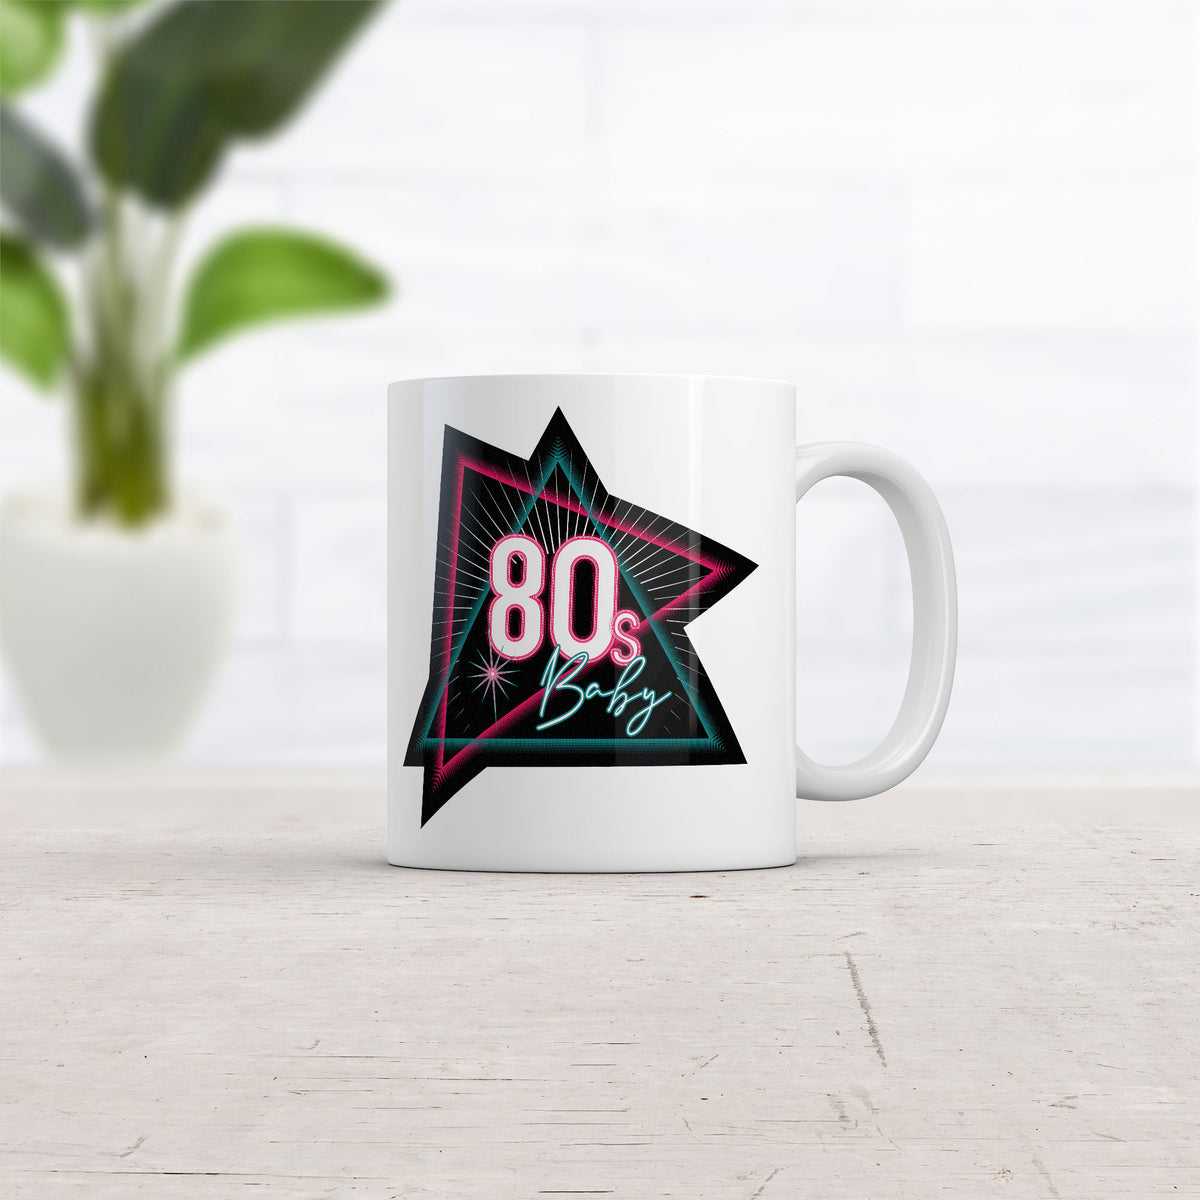 80s Baby Mug